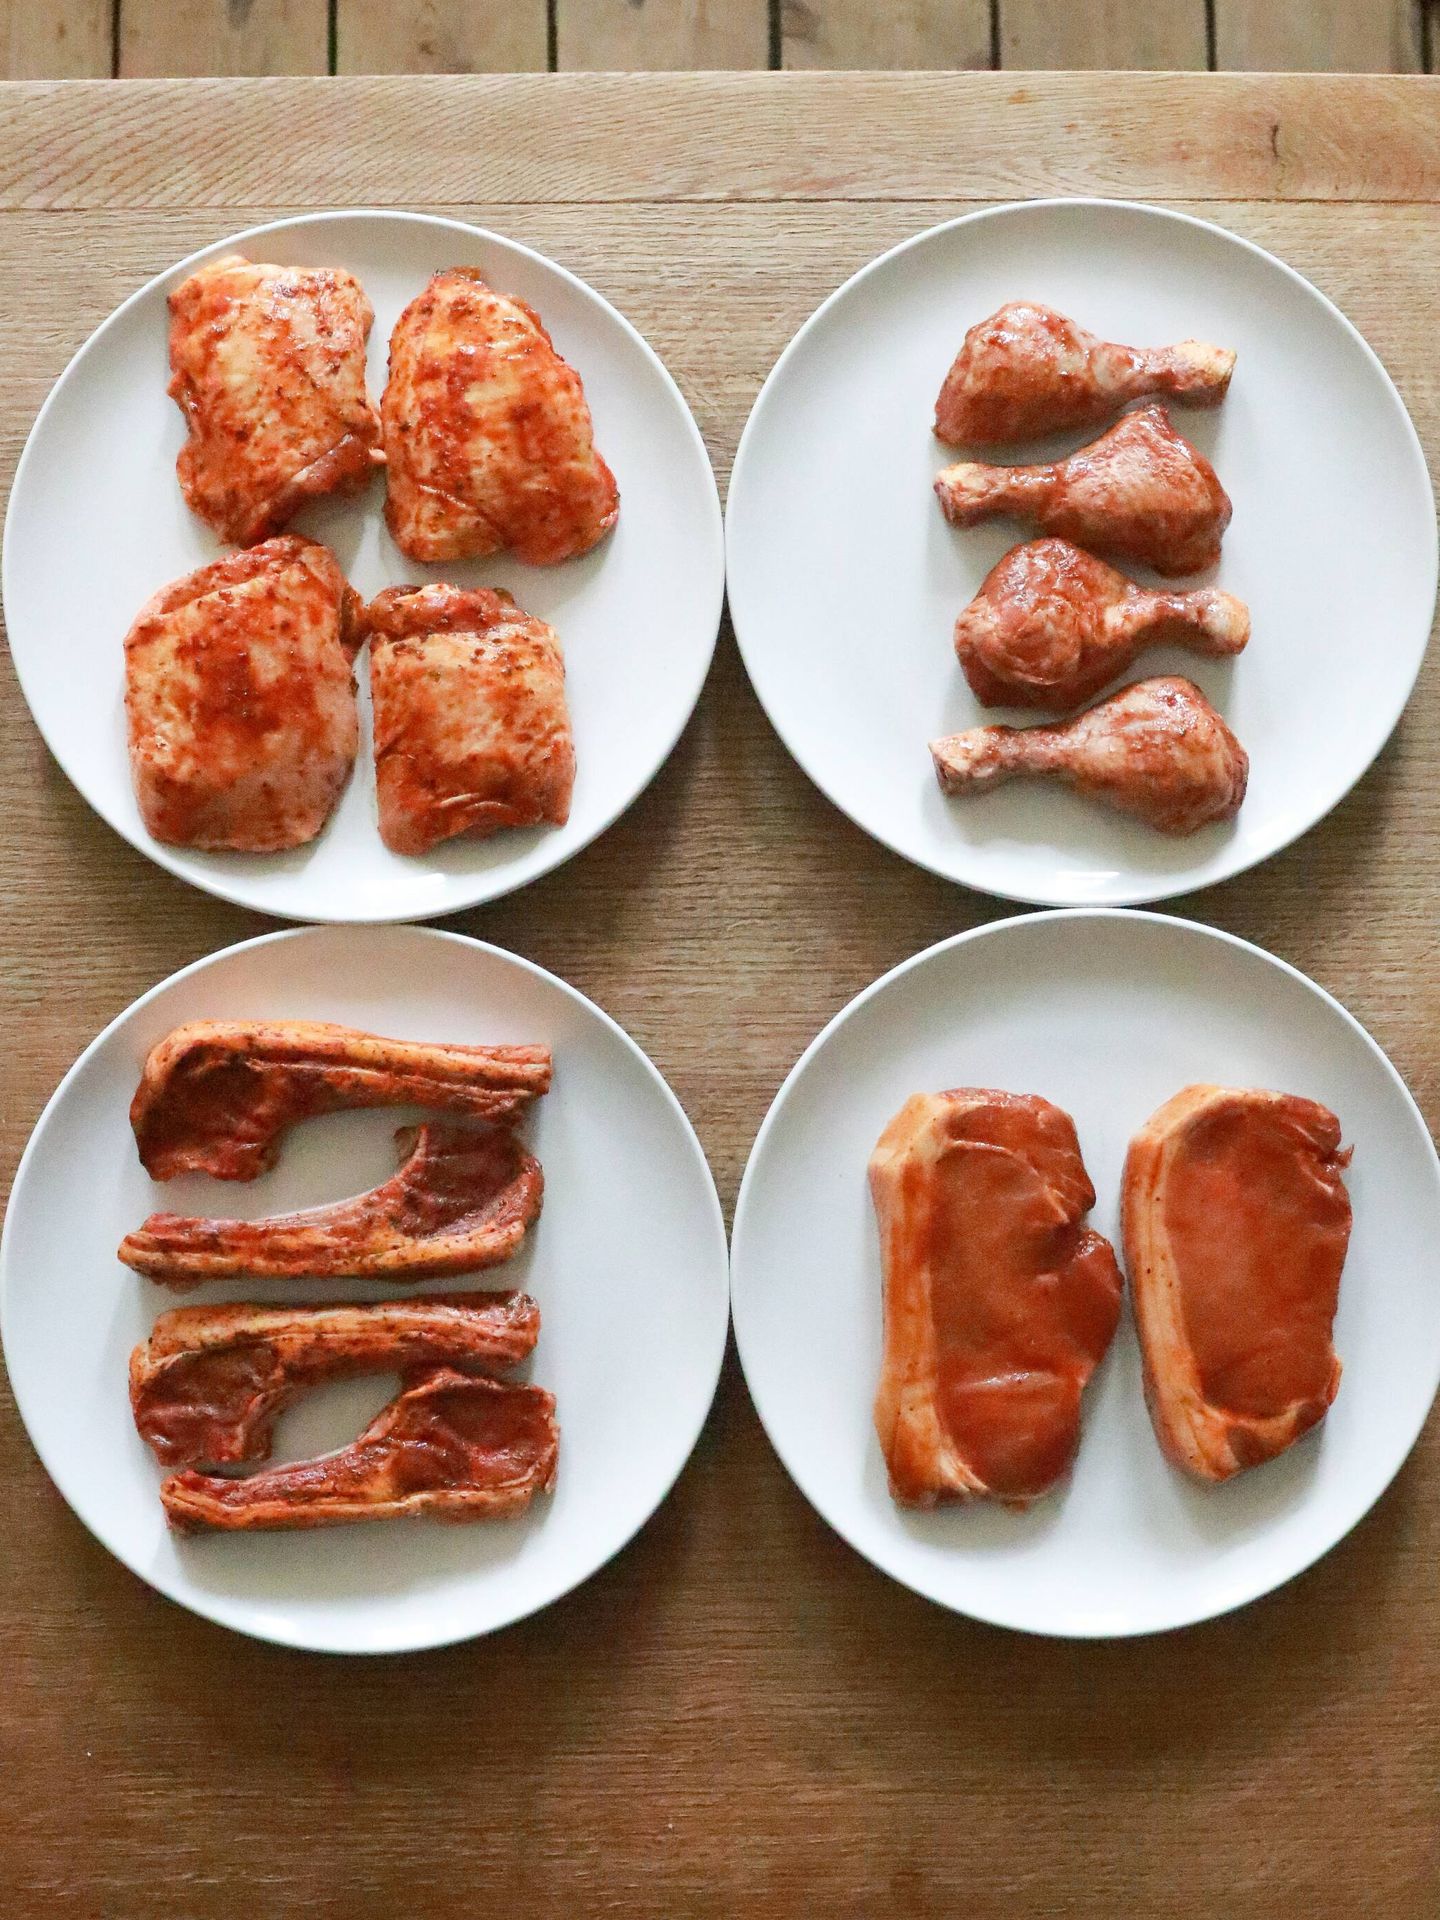 Hay carnes como el cerdo o el pollo que están prohibidas. (Pexels/Geraud Pfeiffer)